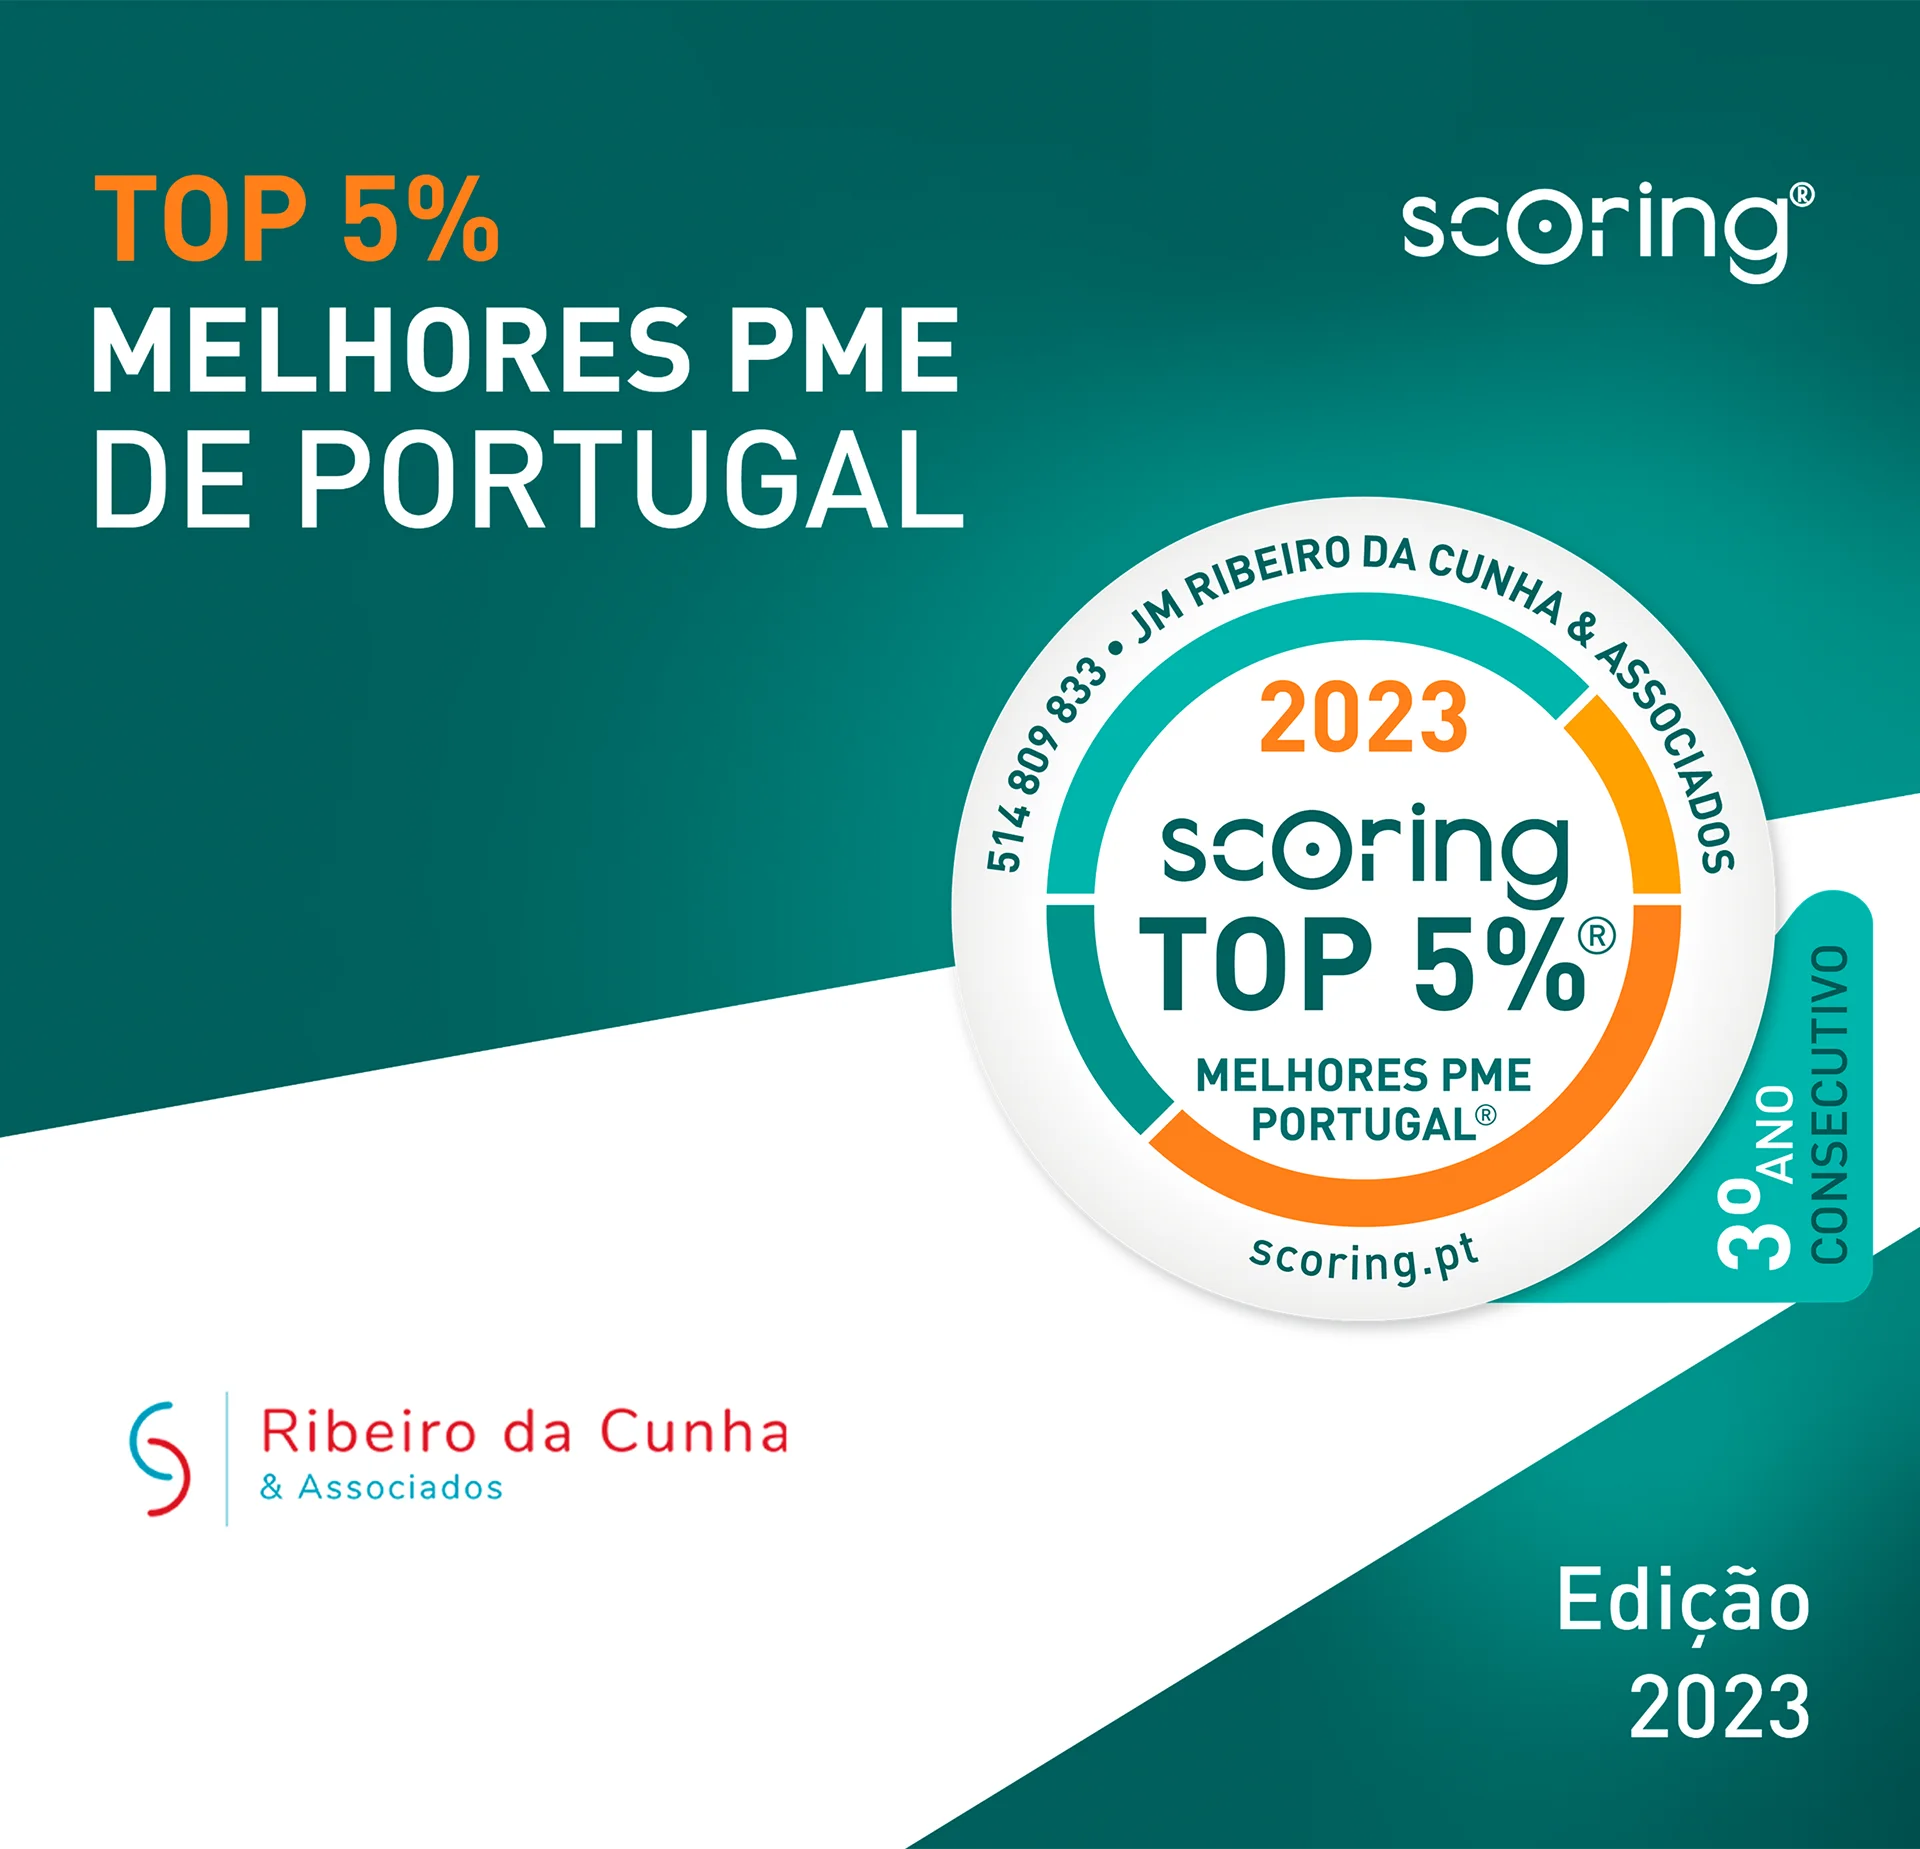 JM Ribeiro da Cunha & Associados distinguida Top Scoring 5%